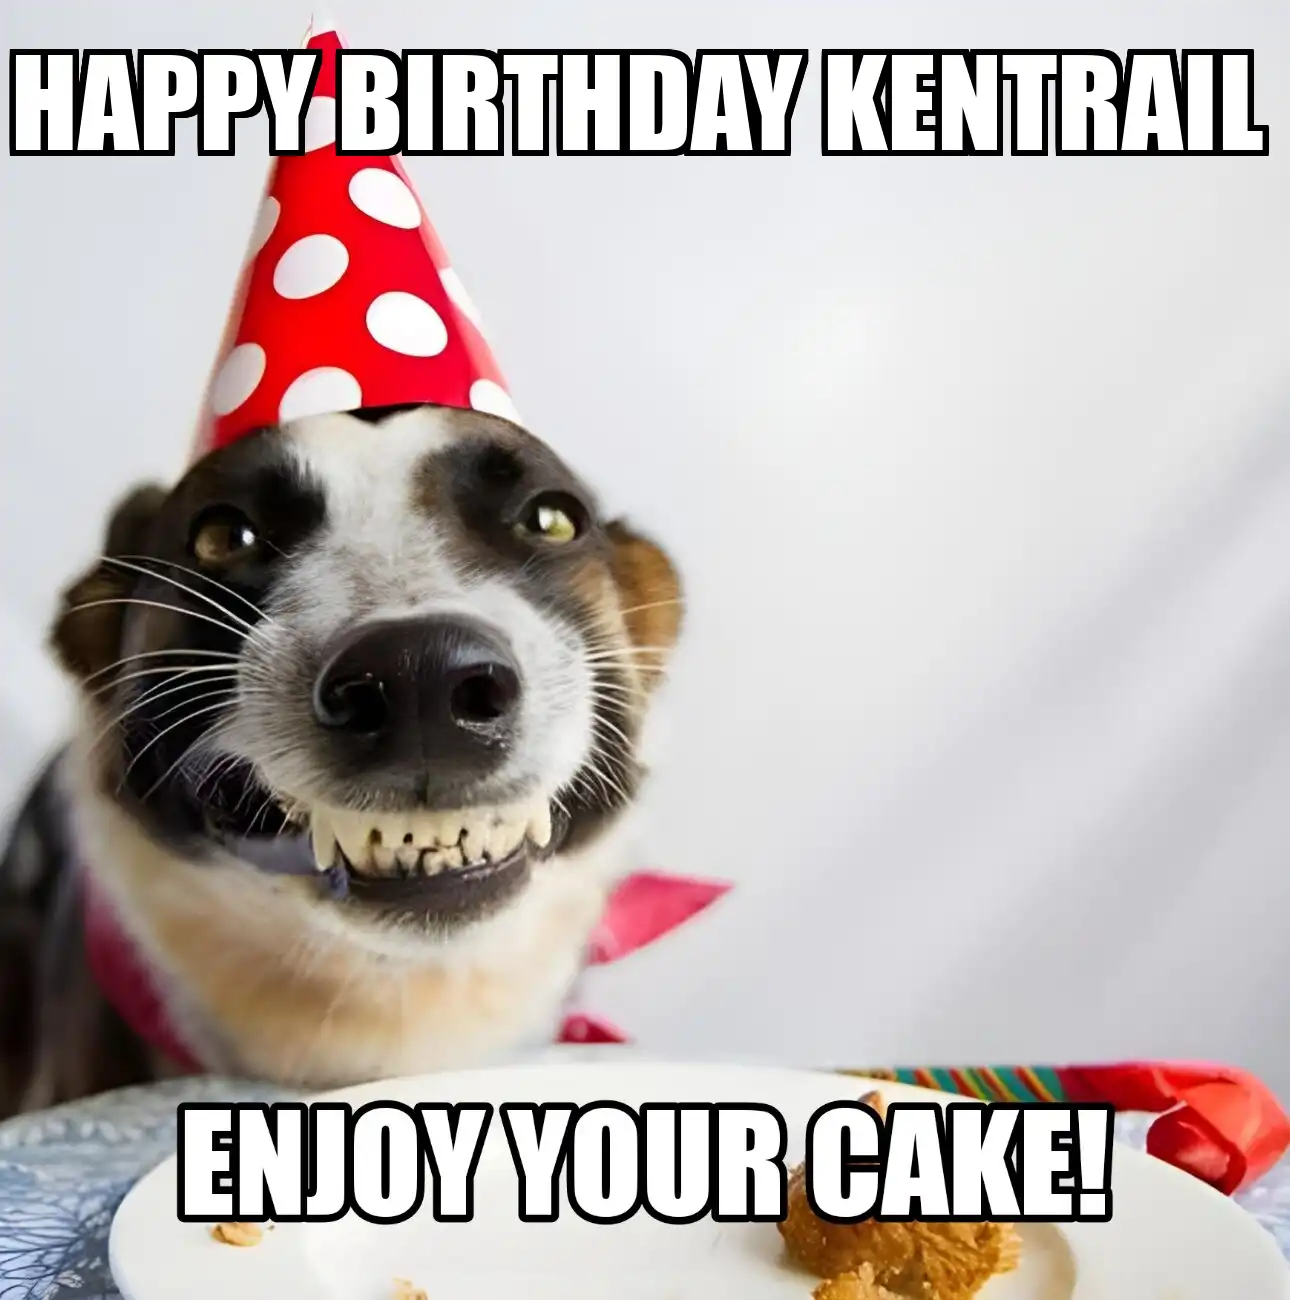 Happy Birthday Kentrail Enjoy Your Cake Dog Meme